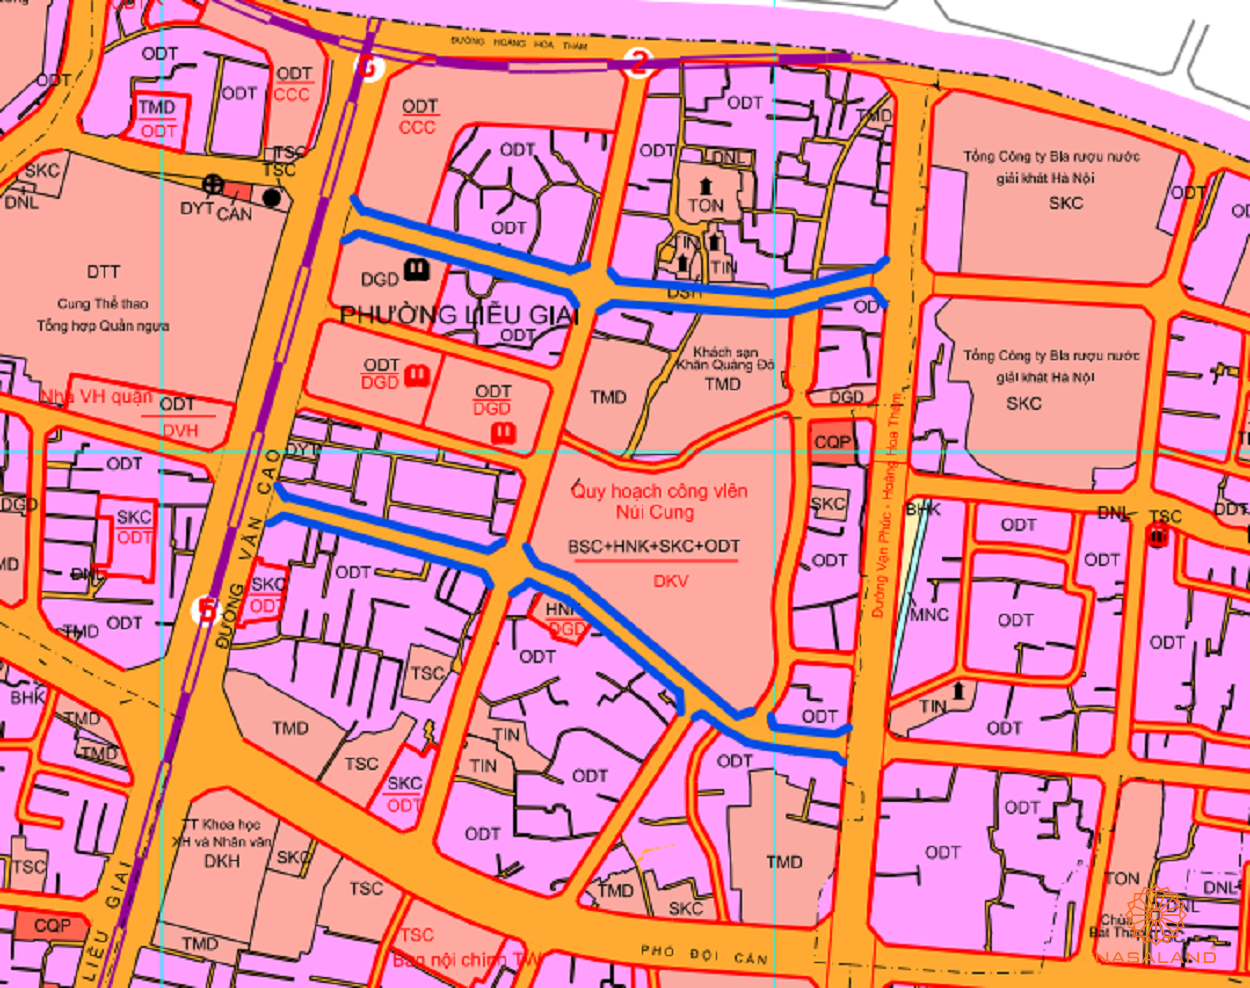 Bản đồ quy hoạch sử dụng đất Phường Liễu Giai theo bản đồ quy hoạch sử dụng đất năm 2020 Quận Ba Đình, TP Hà Nội.